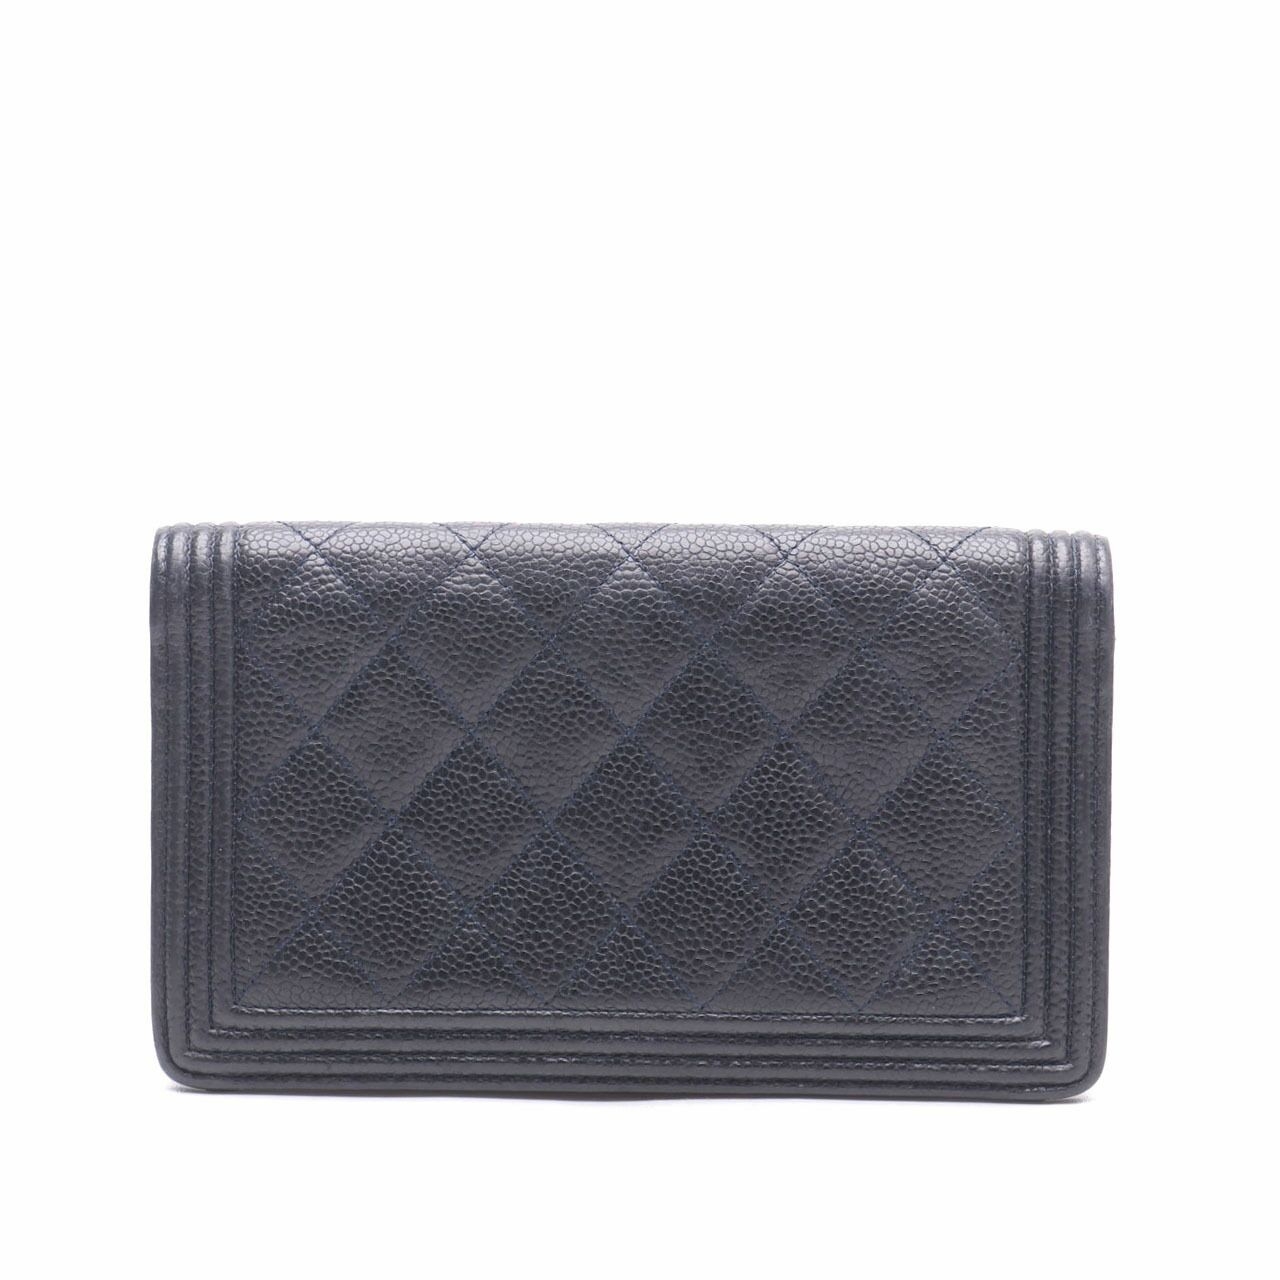 Chanel Black Boy Long Wallet